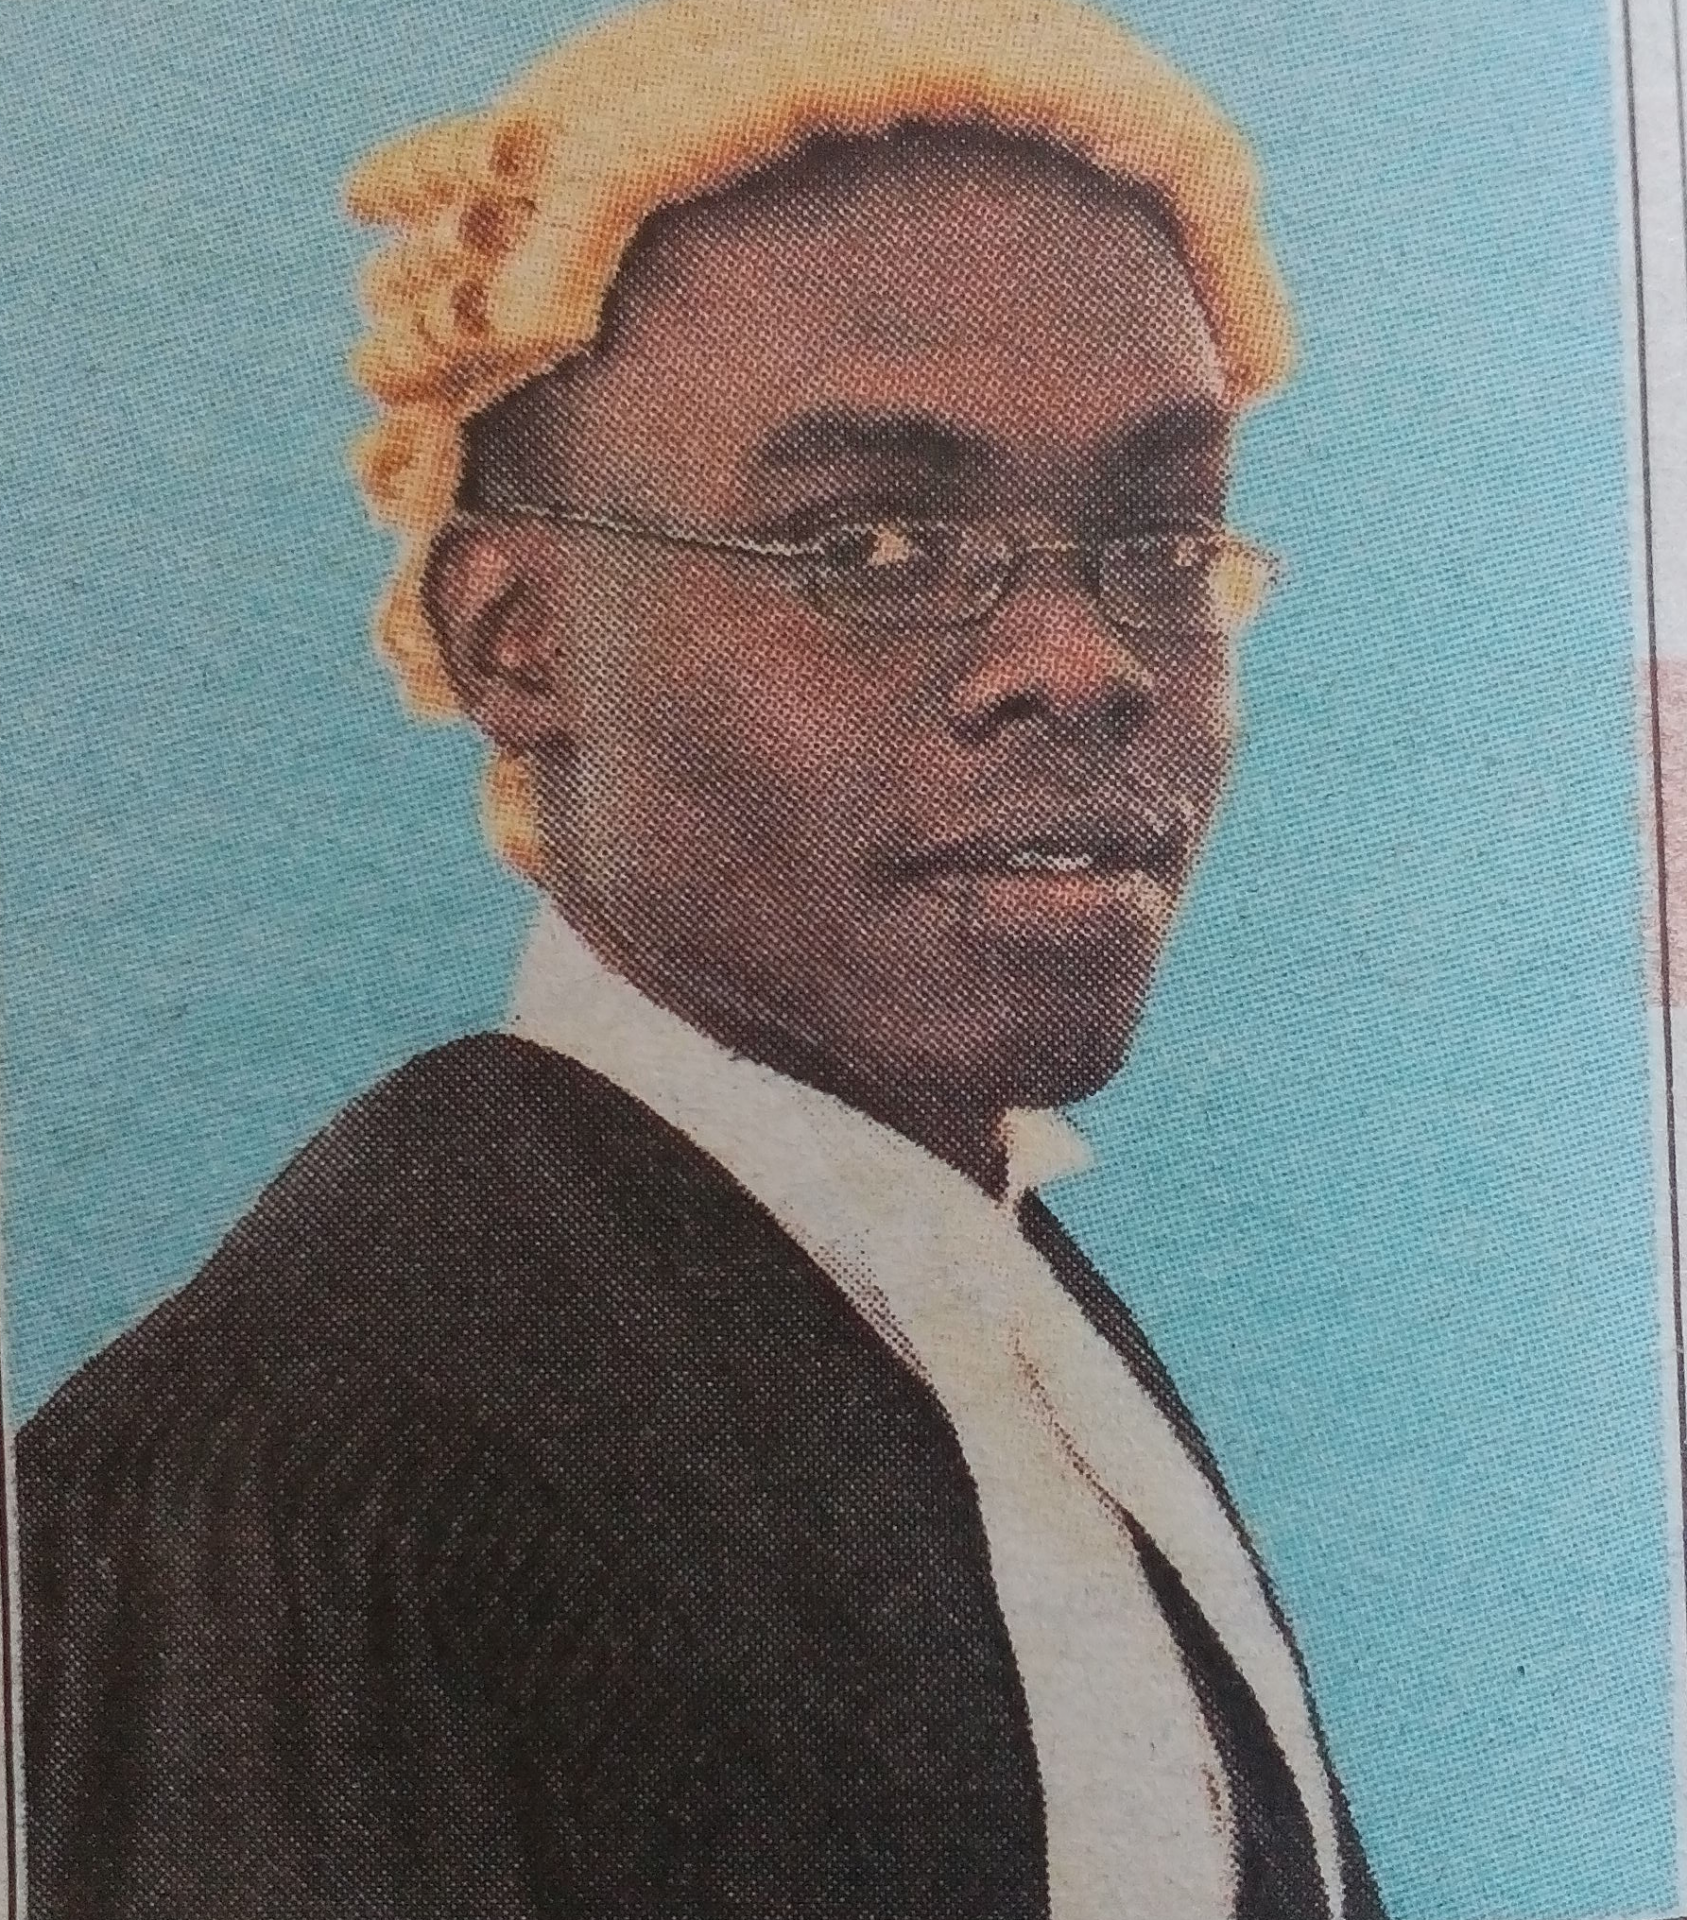 Obituary Image of Charles Mwenesi Kayesi